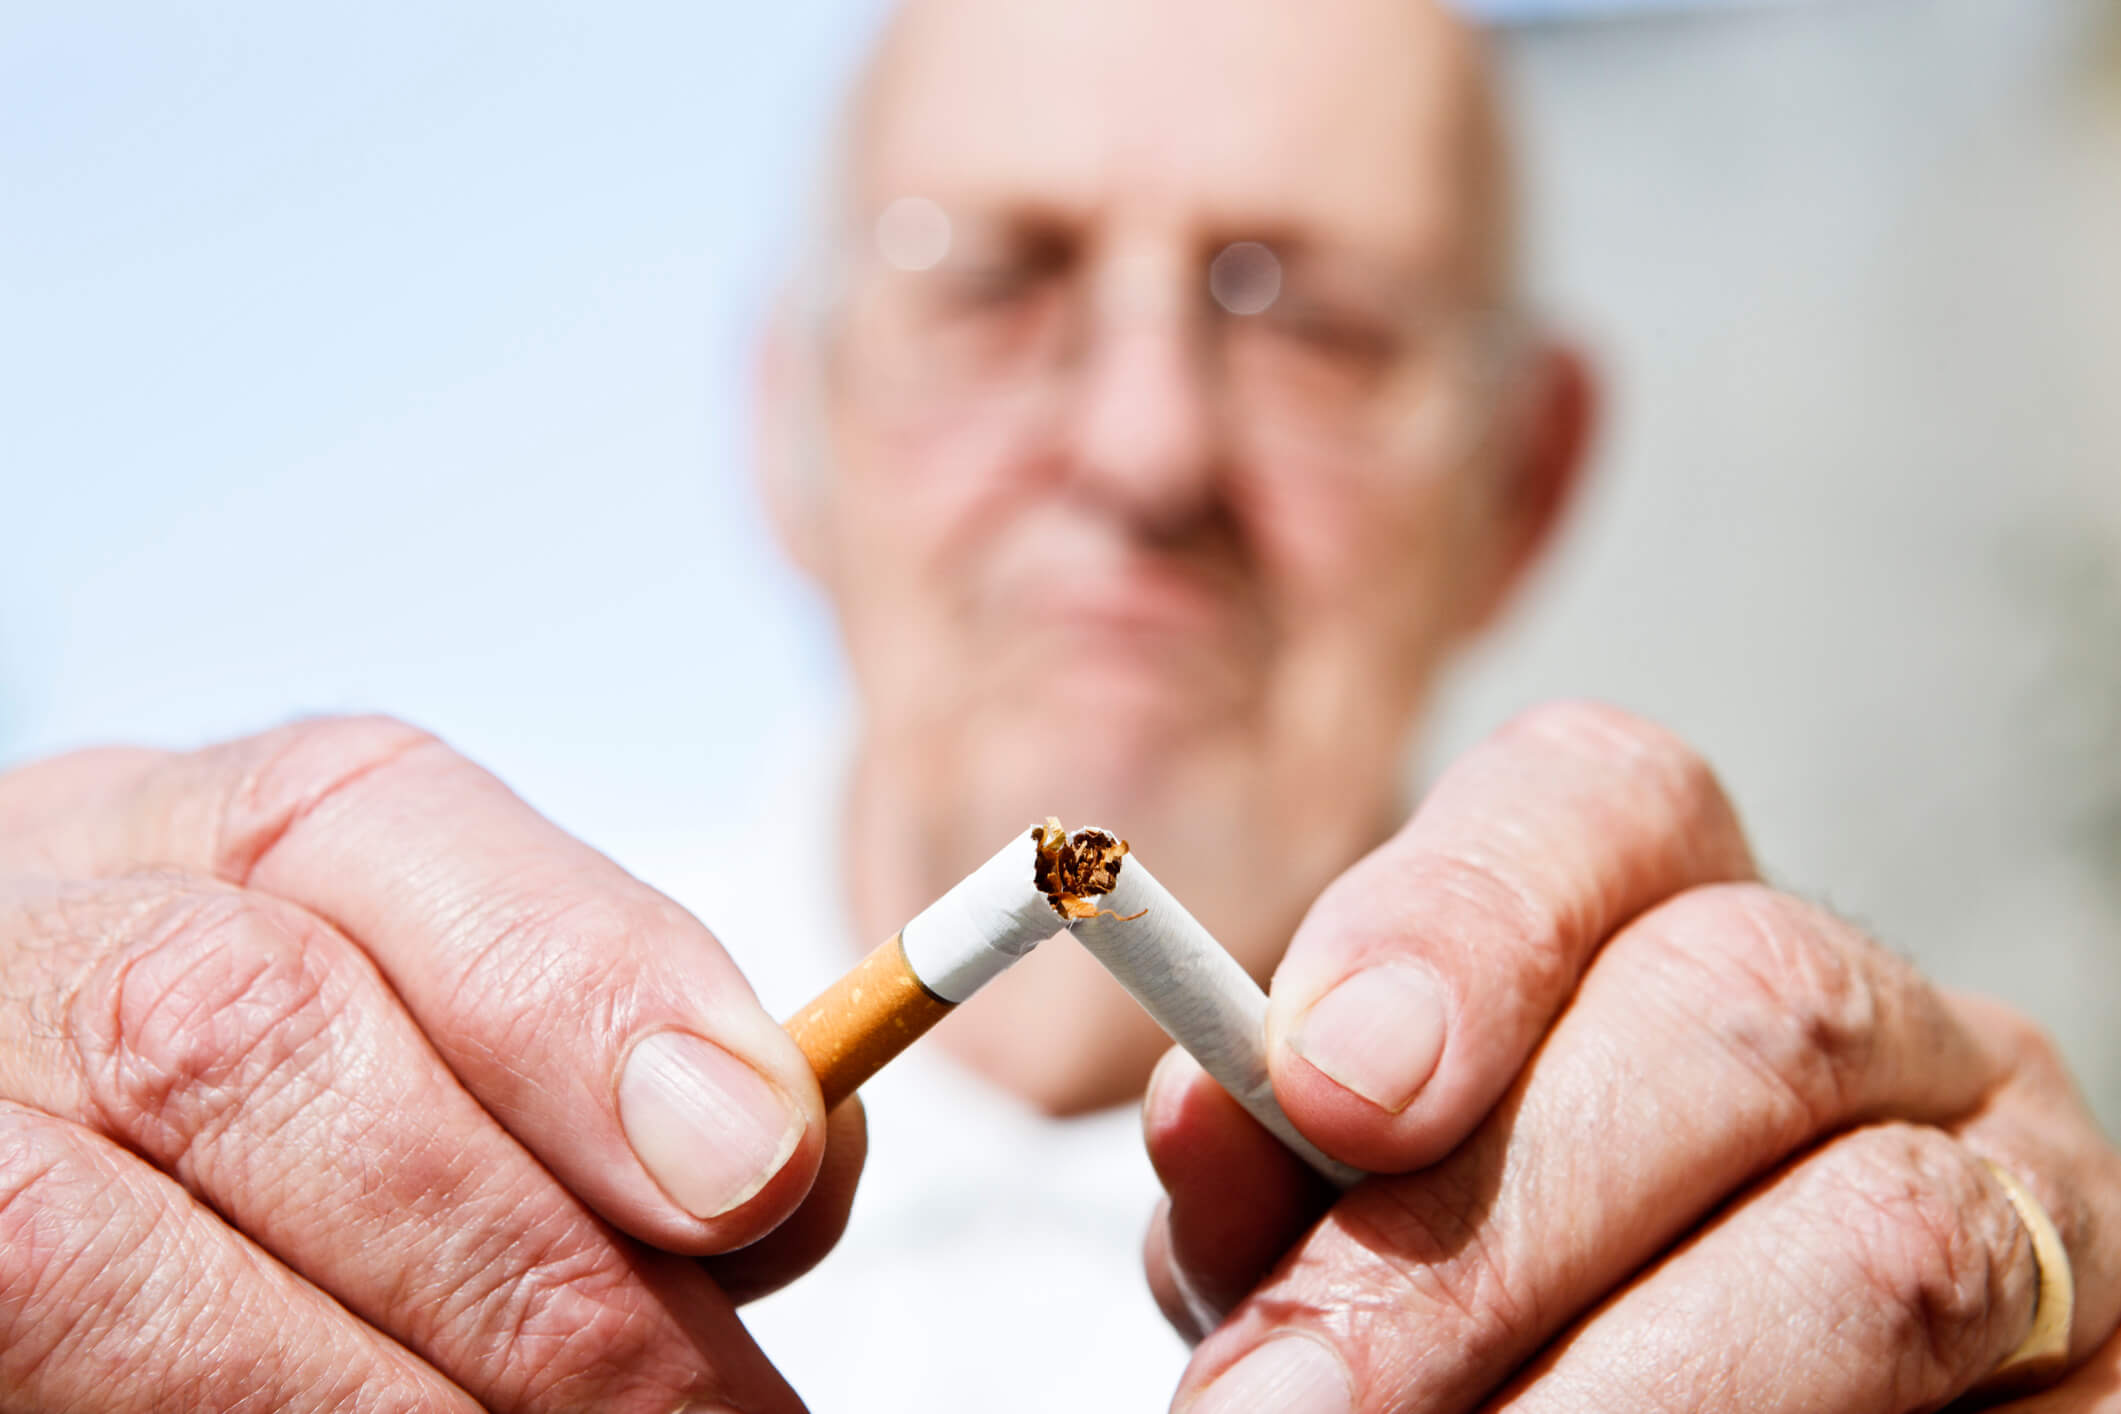 Consumo de cigarro favorece o aparecimento do câncer de pulmão